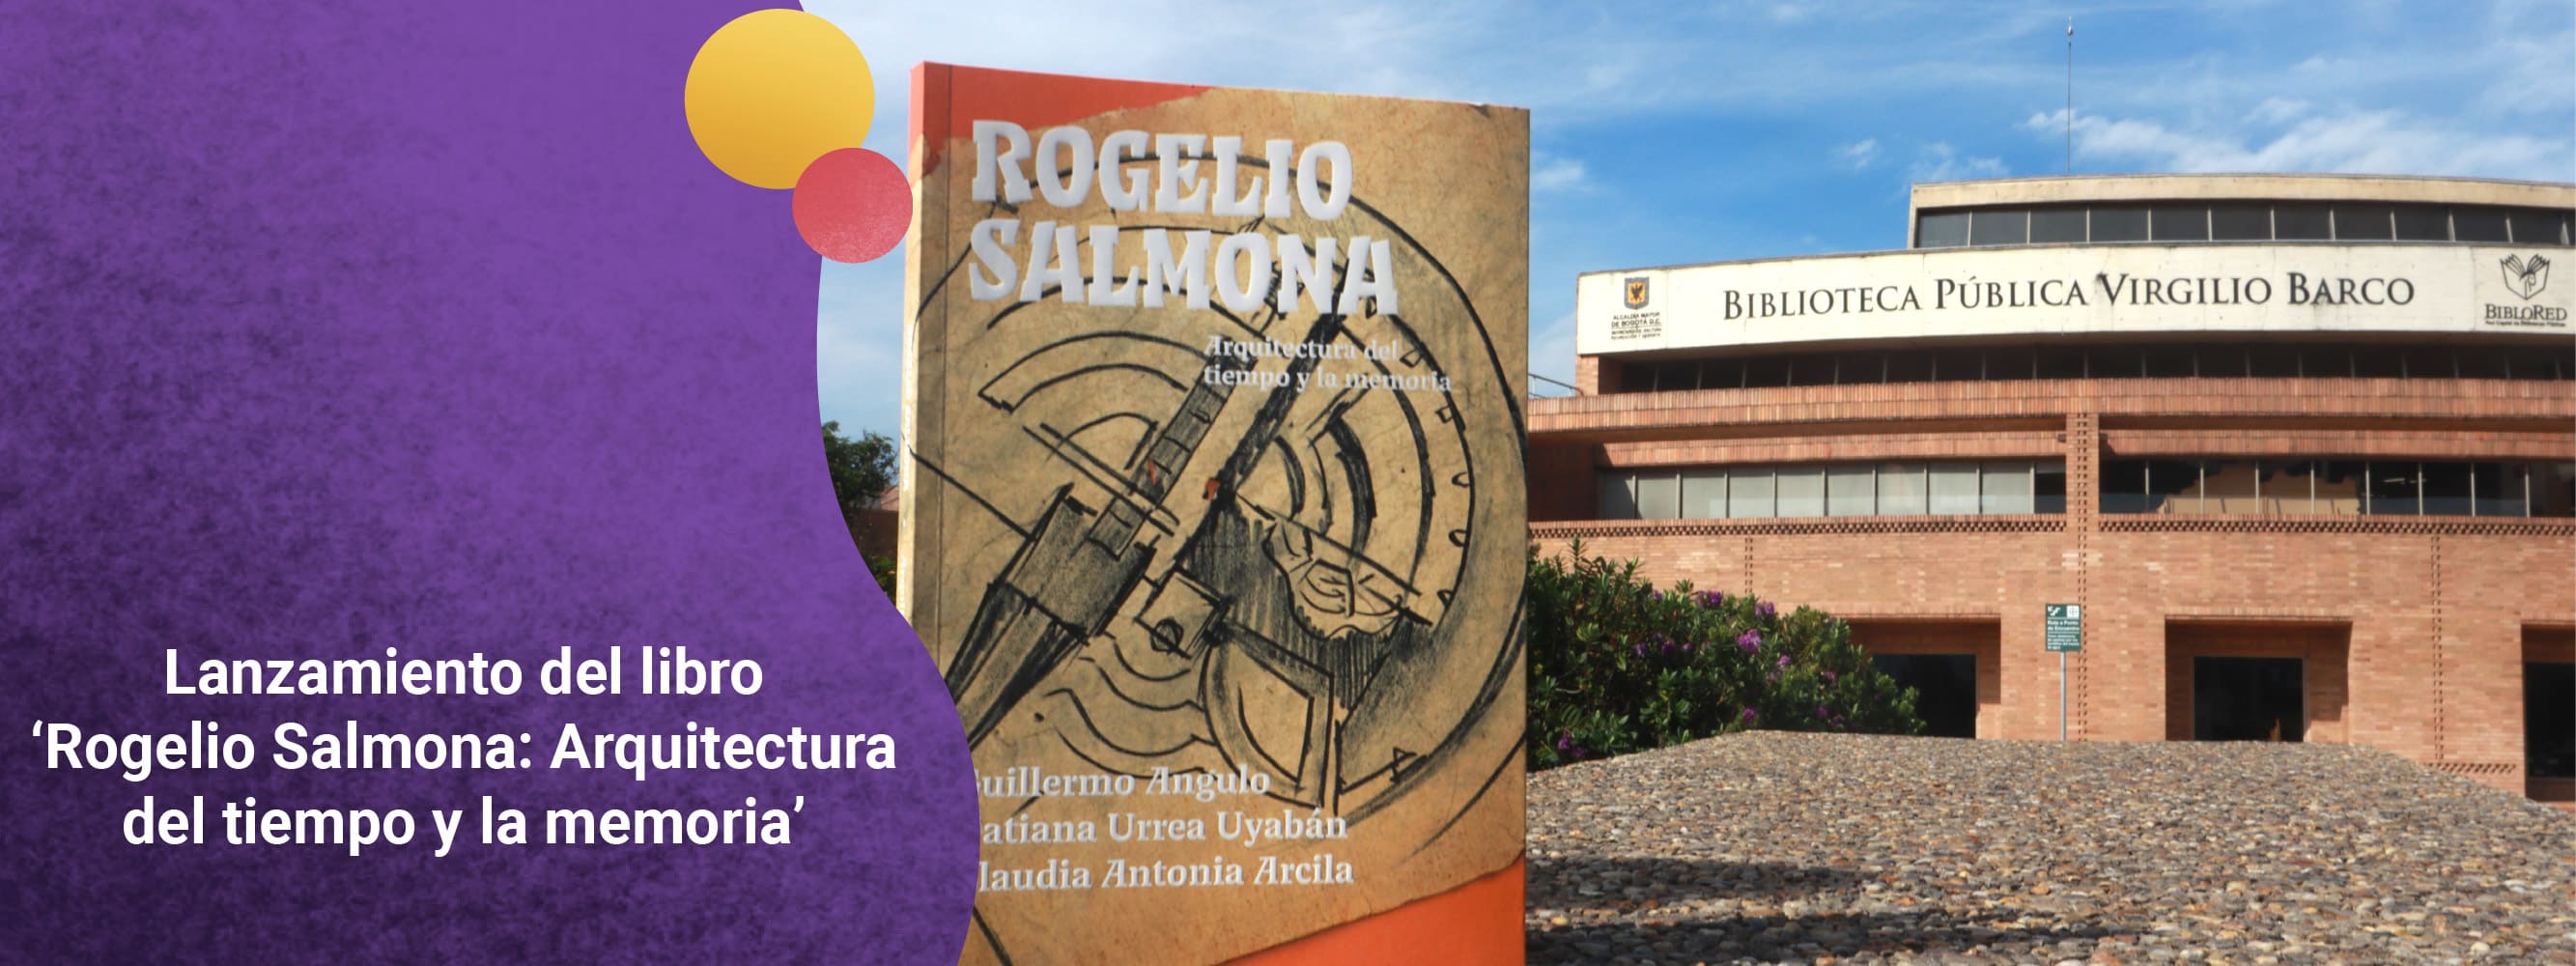 Lanzamiento del libro ‘Rogelio Salmona: Arquitectura del tiempo y la memoria’